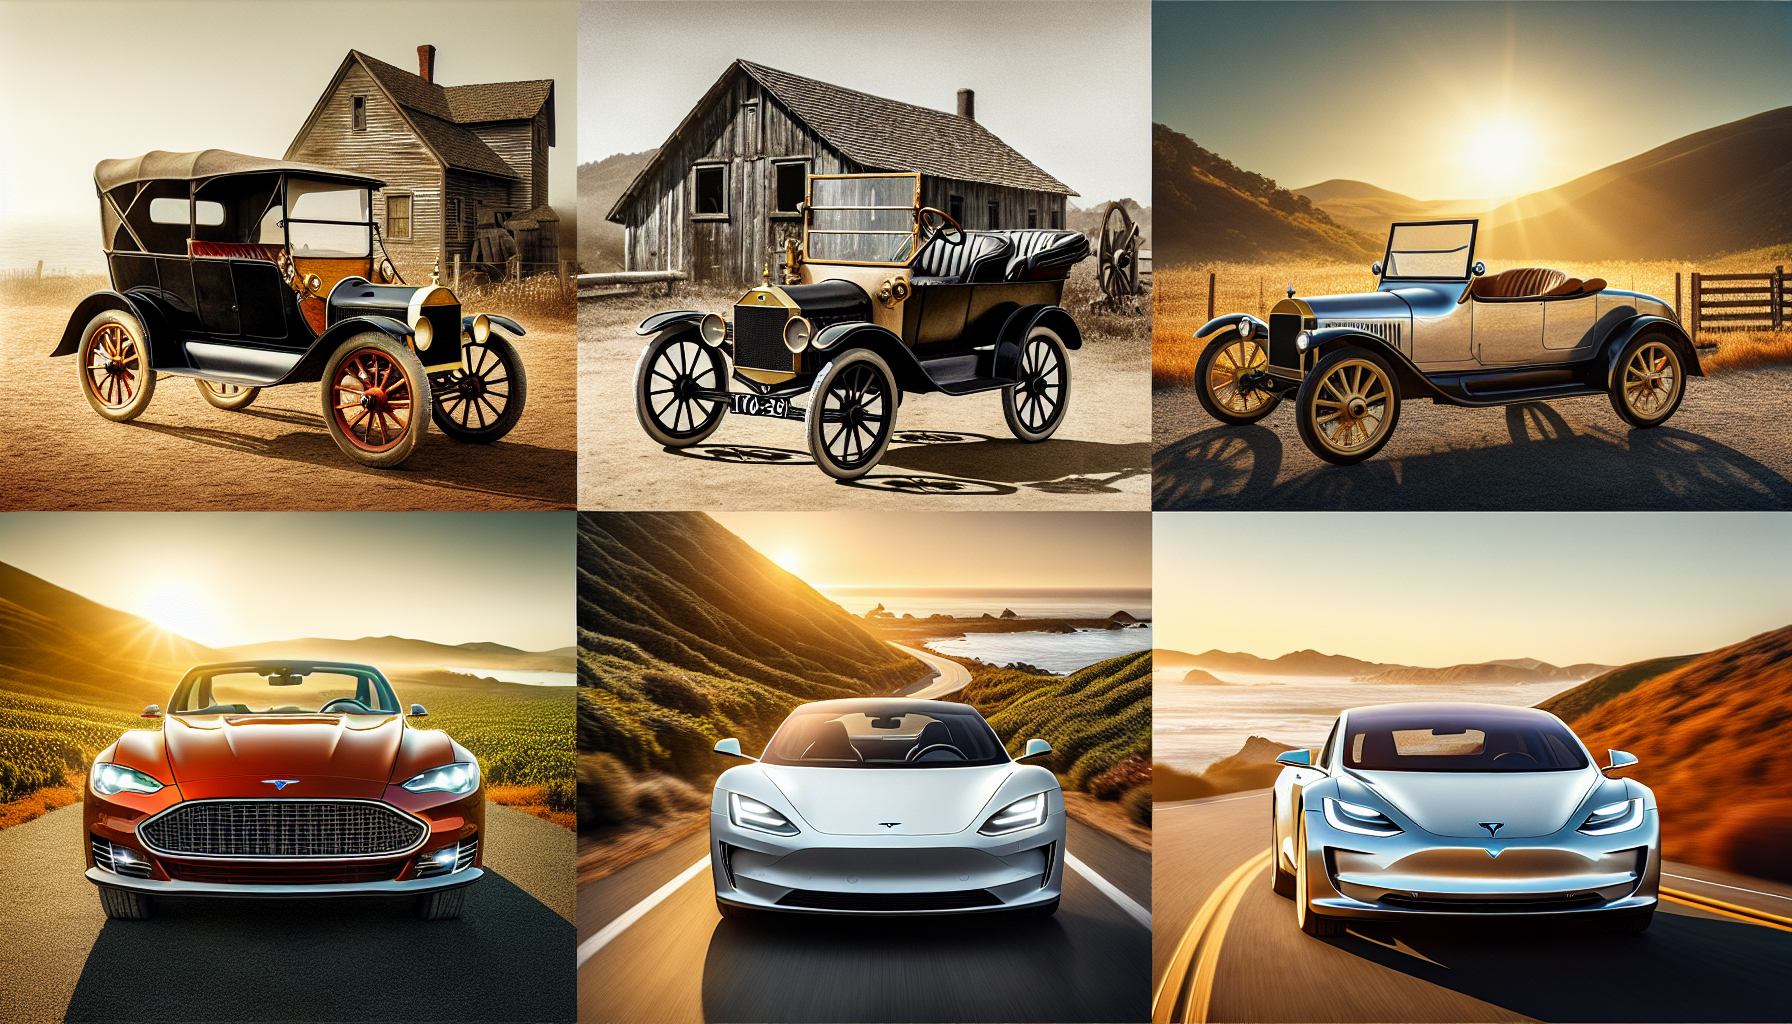 découvrez les voitures qui ont laissé une empreinte indélébile dans l'histoire de l'automobile et marqué leur époque de manière emblématique.